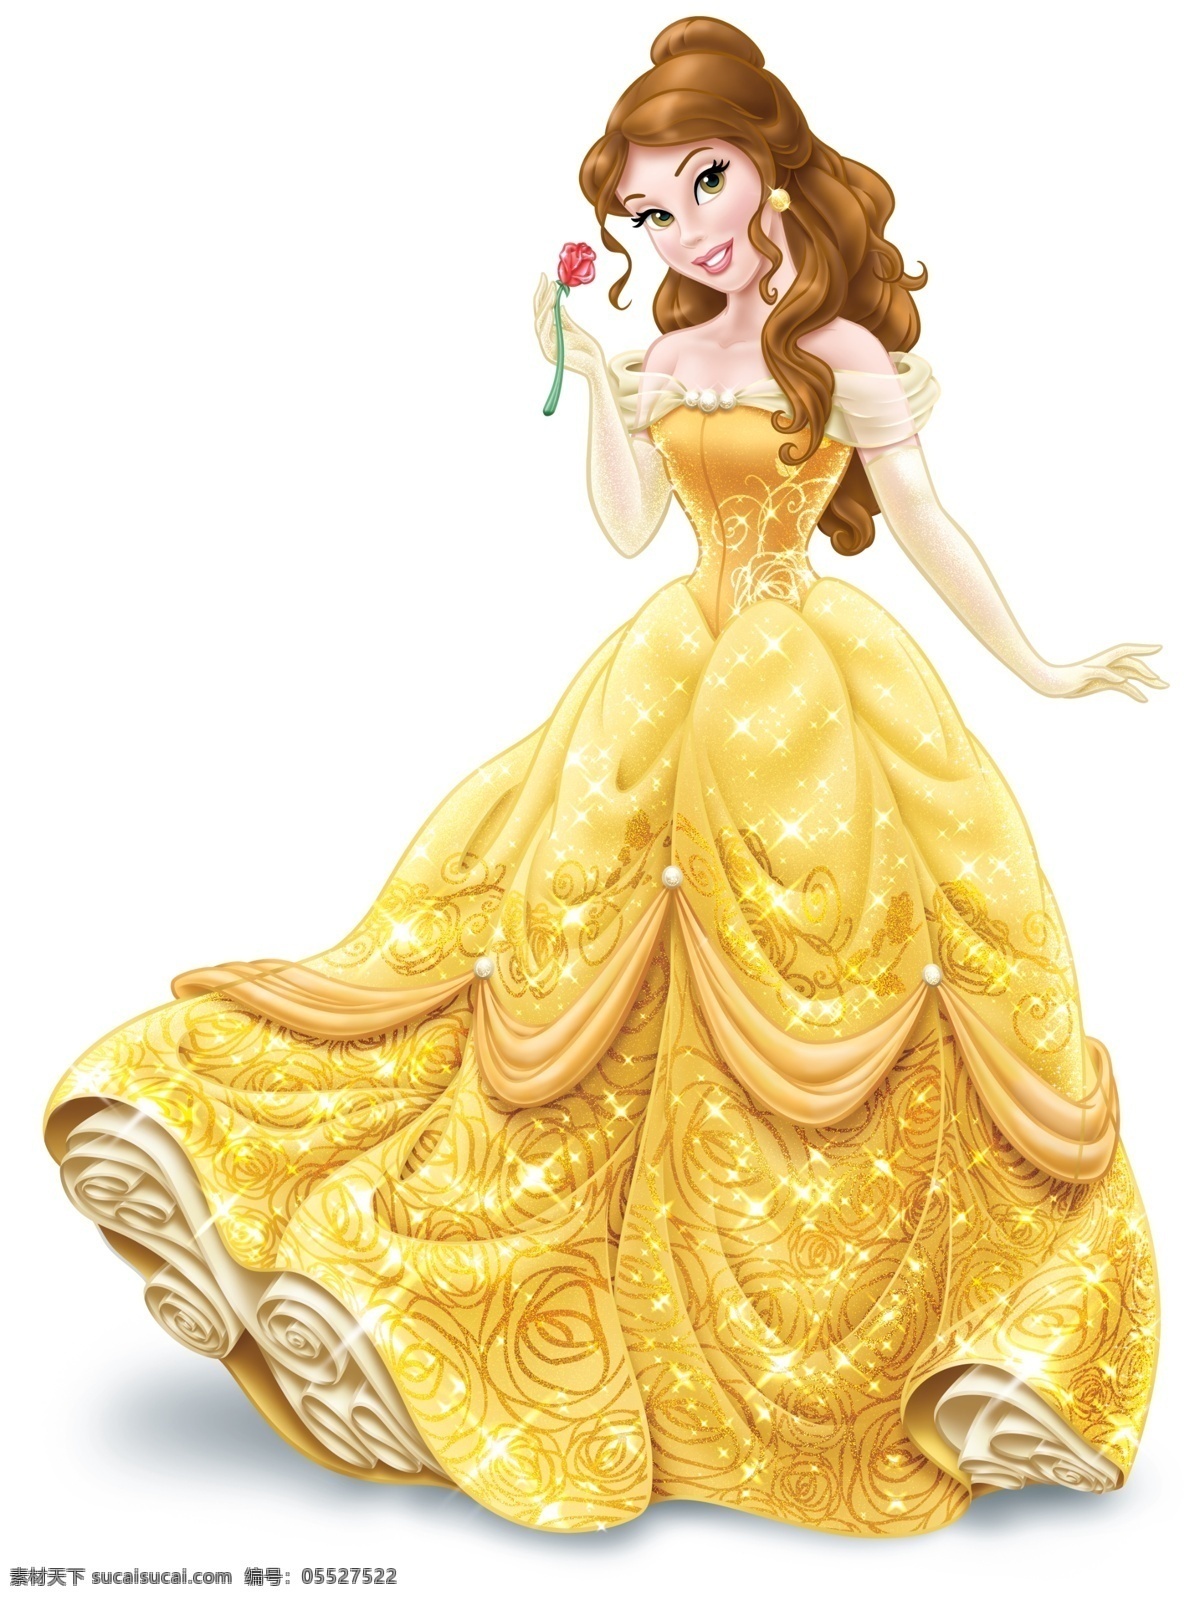 迪士尼 贝儿 公主 贝儿公主 卡通公主 美女与野兽 迪士尼公主 动漫动画 动漫人物